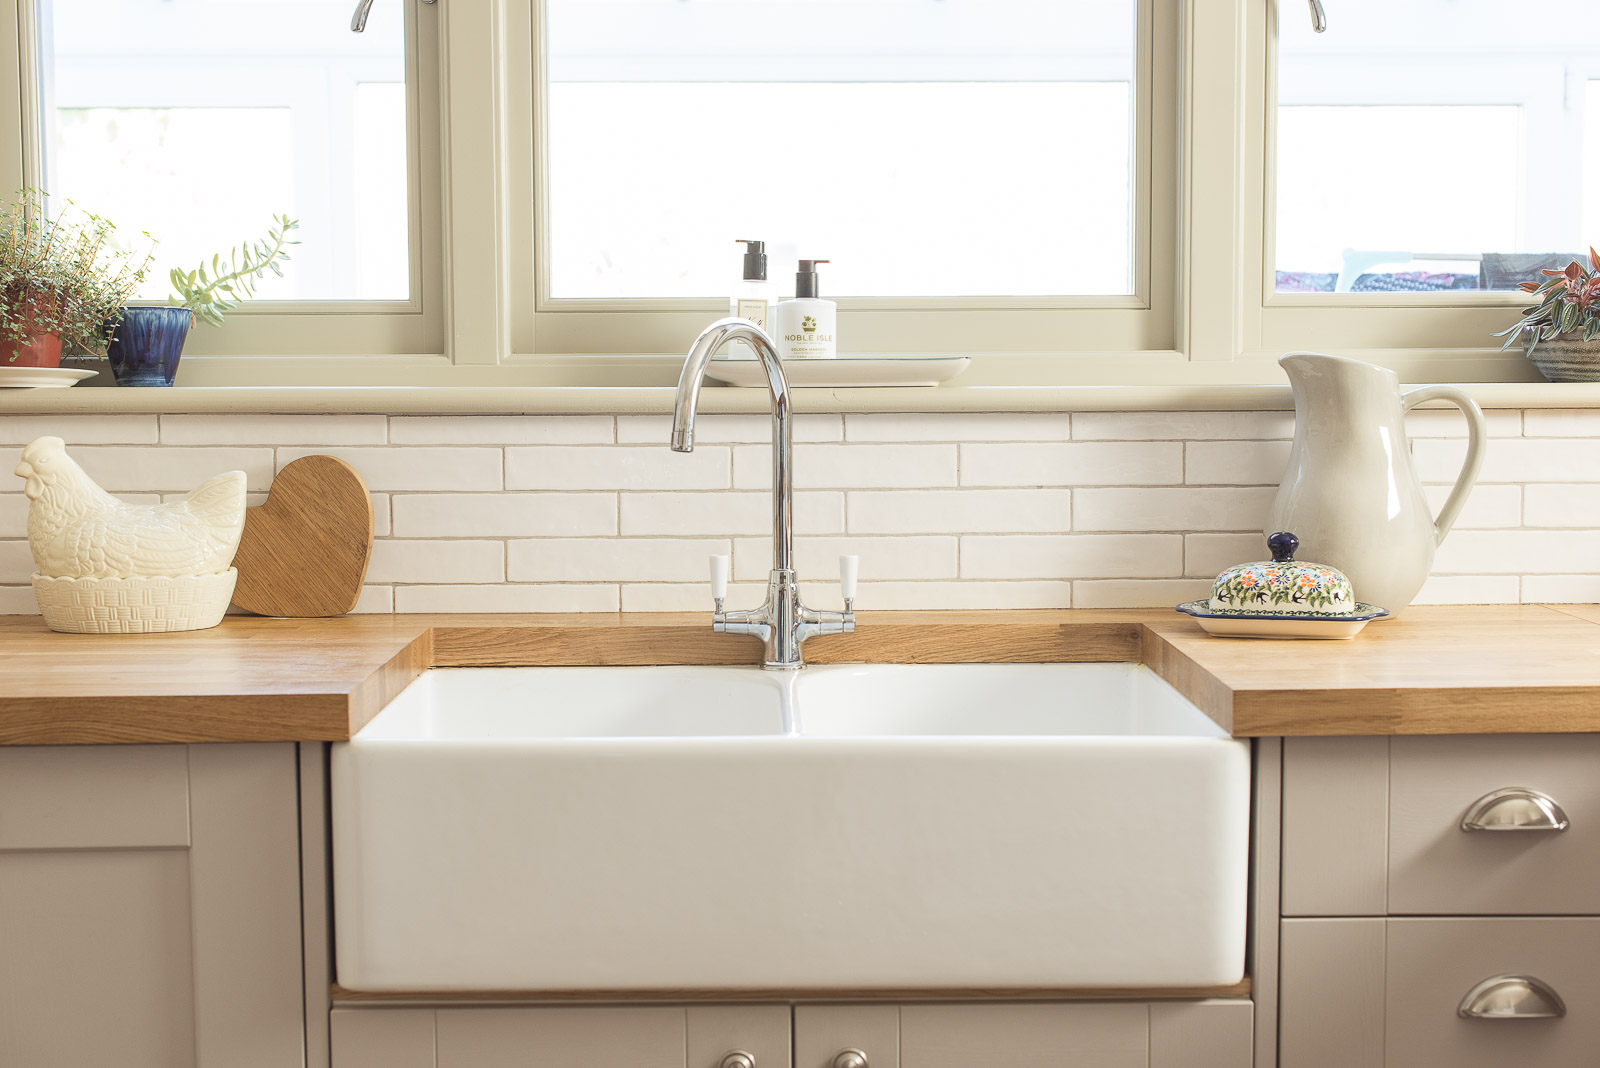 belfast sink kitchen design